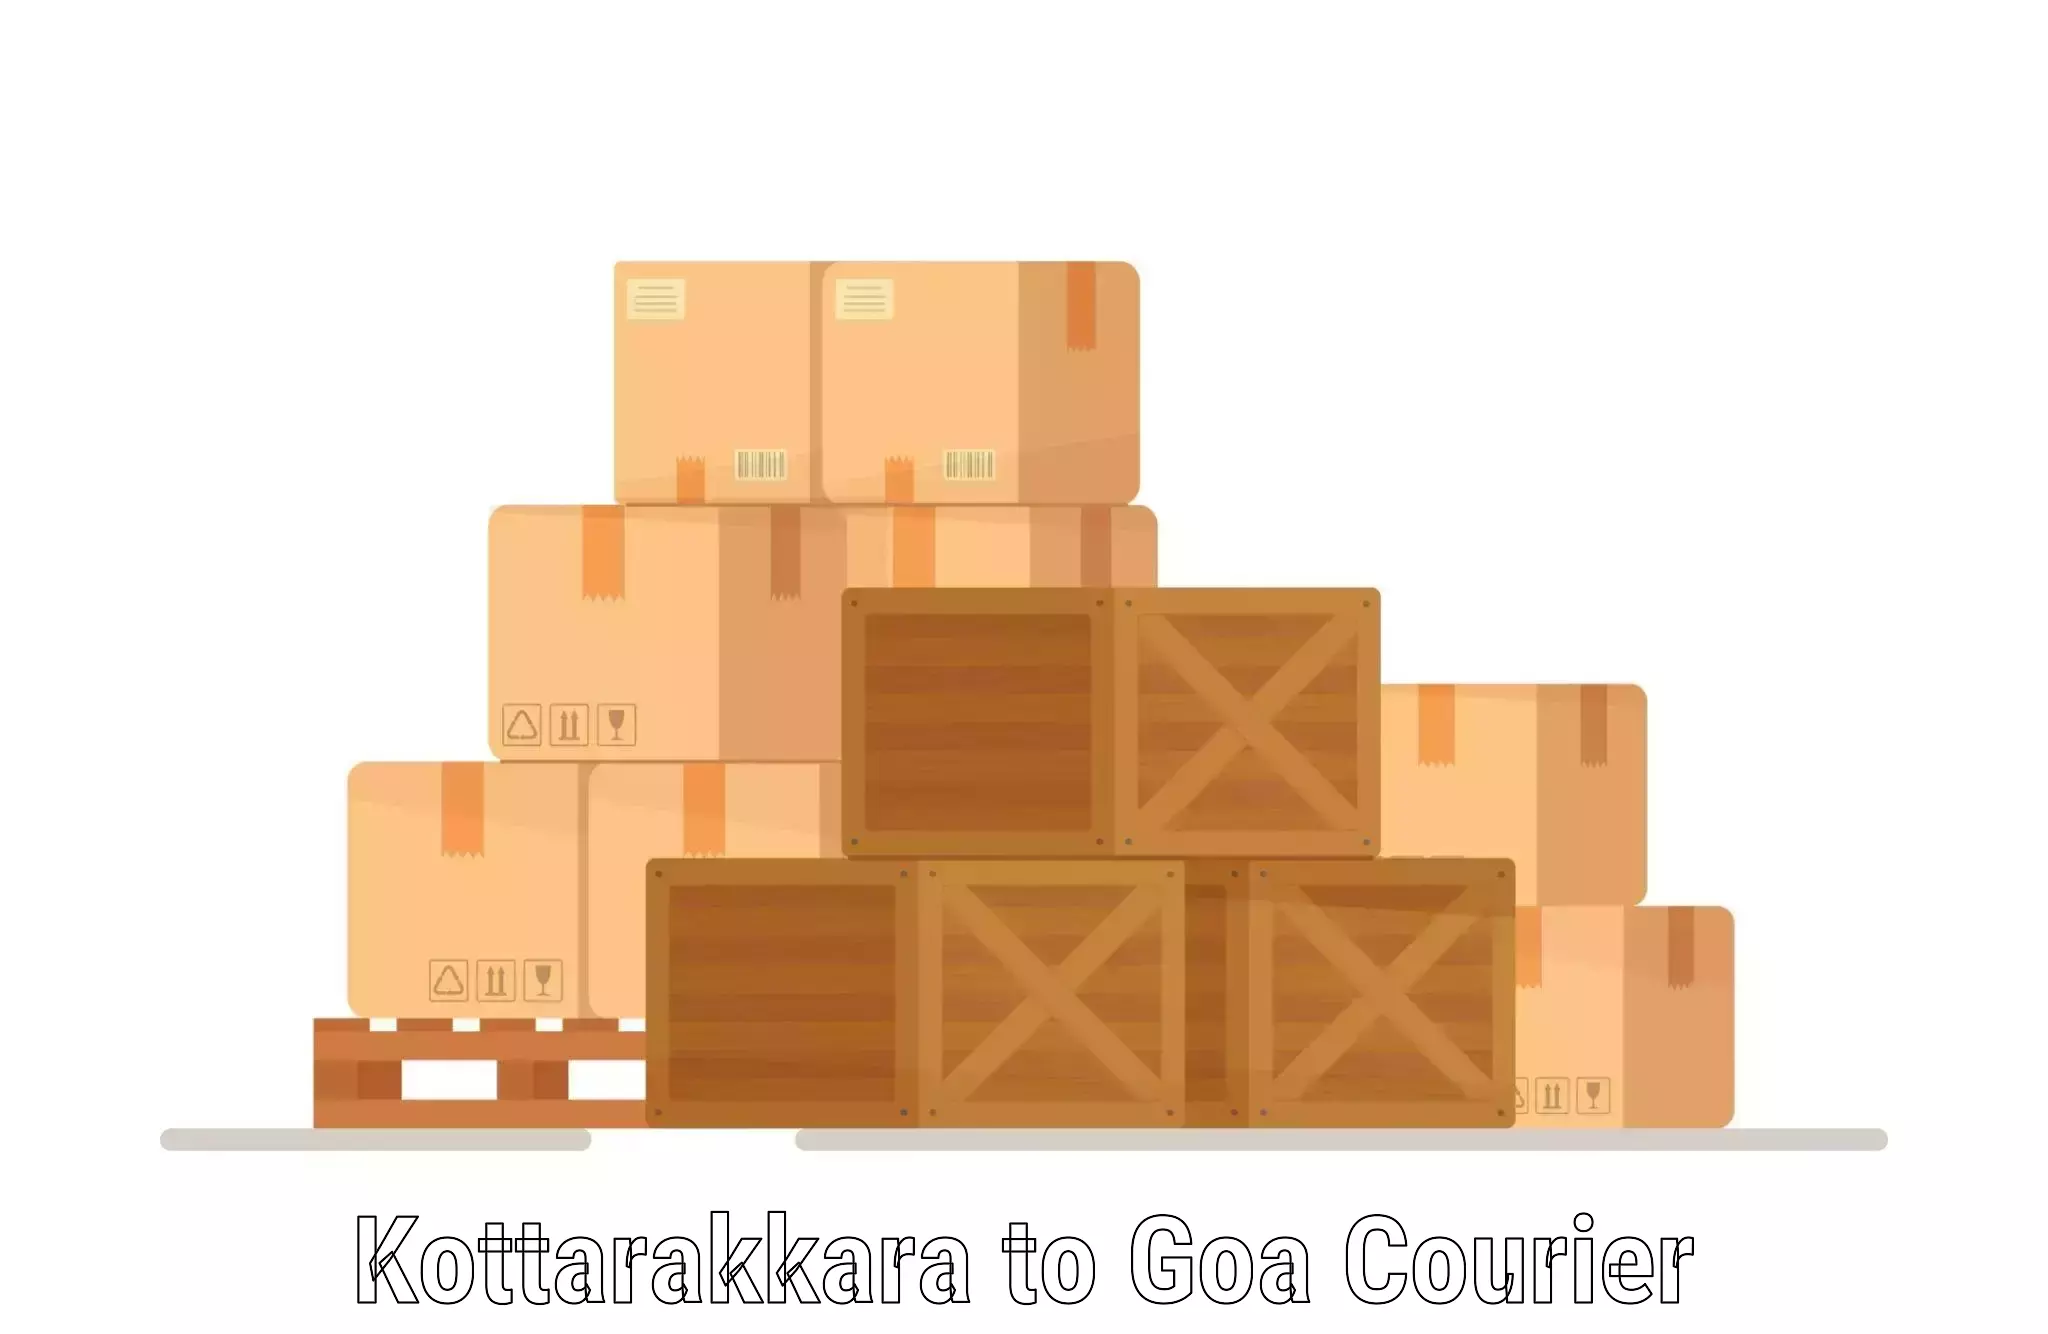 Courier service partnerships Kottarakkara to IIT Goa